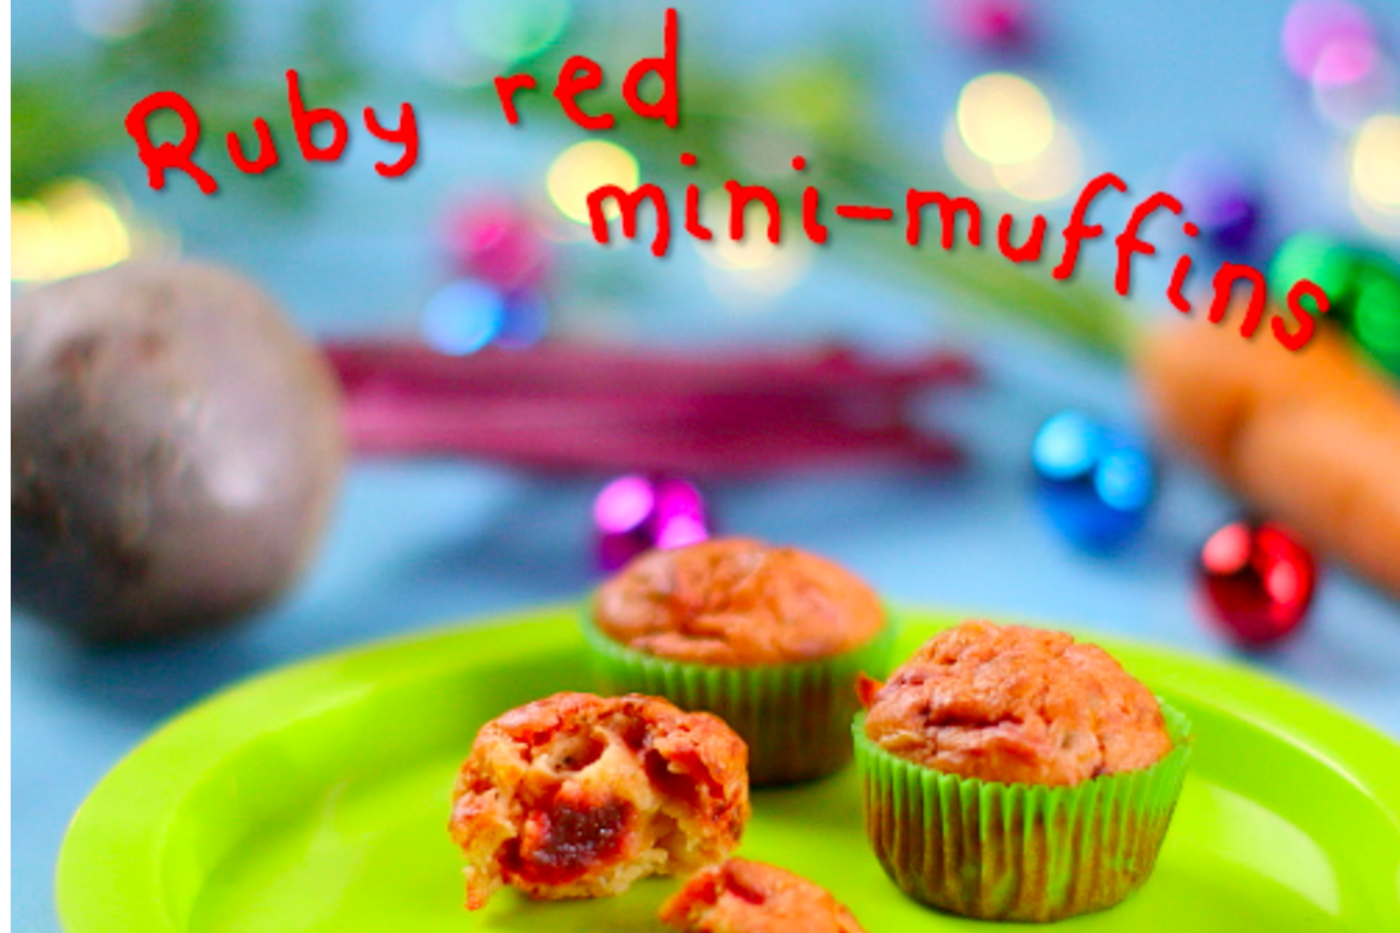 Ruby Red Mini Muffins